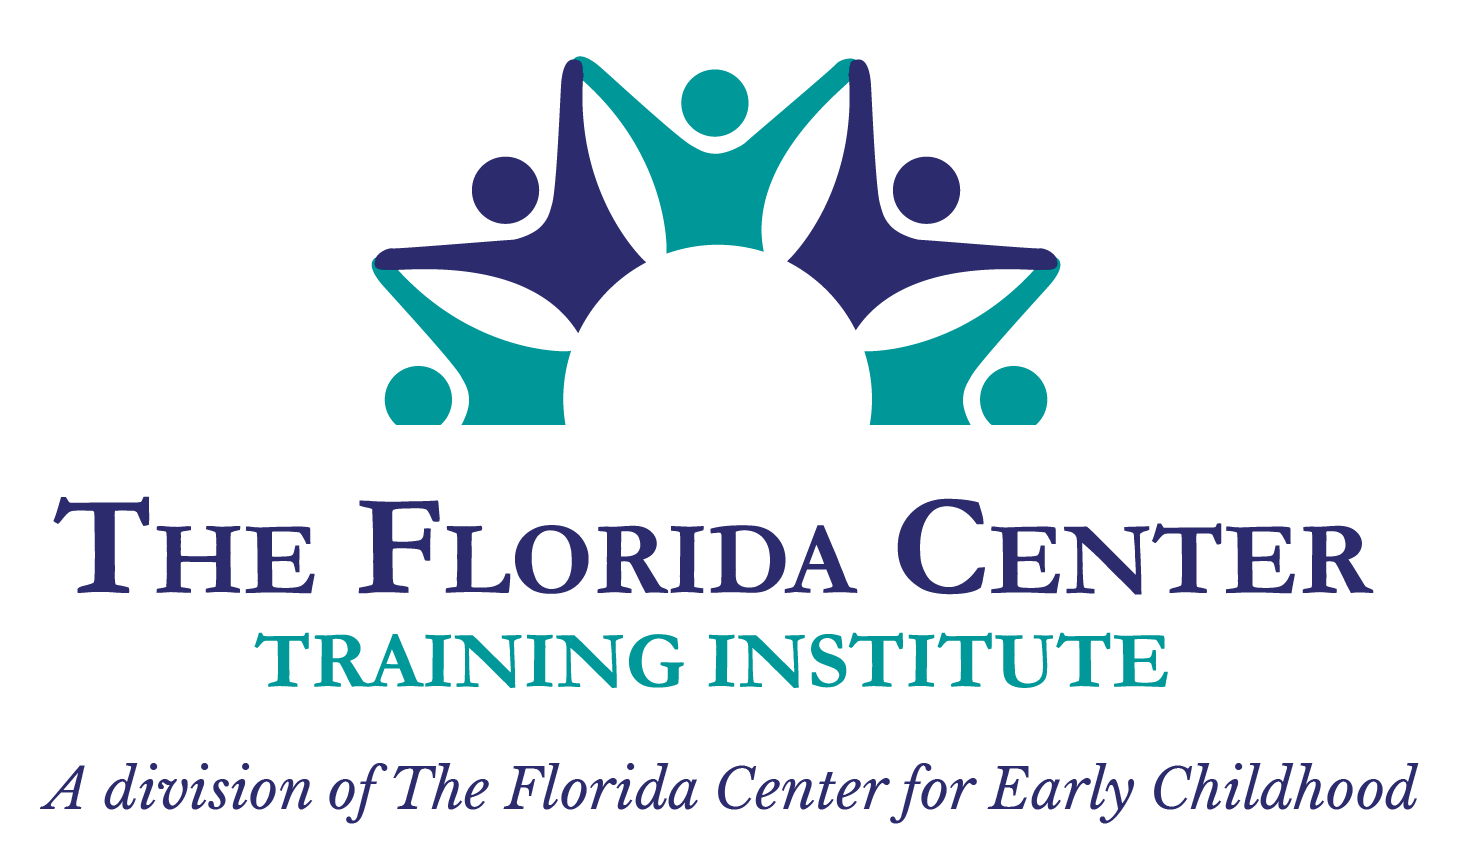 The Florida Center Training Institute